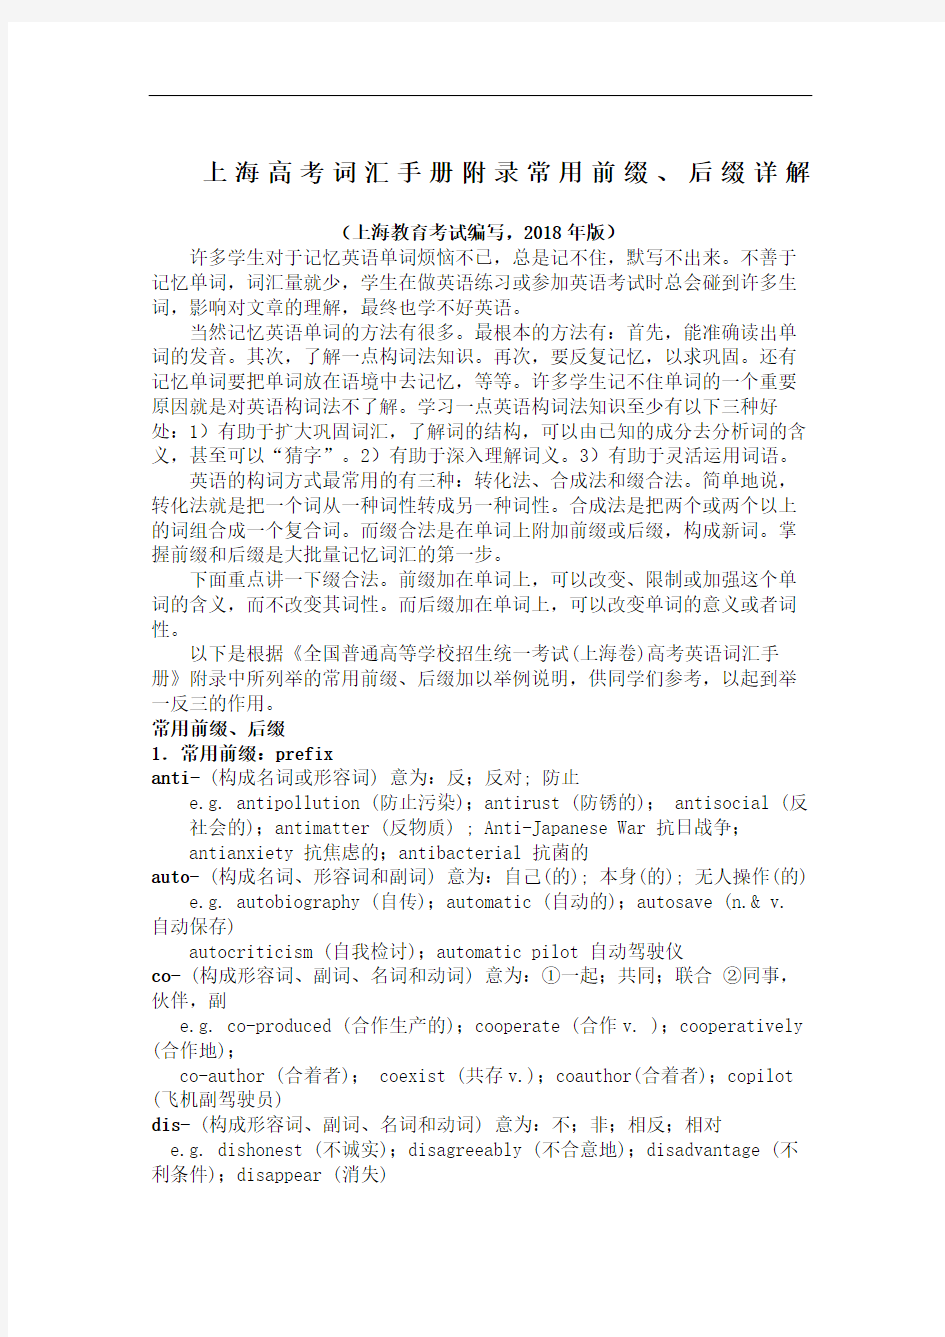 上海高考词汇手册附录常用前缀后缀详解上海教育考试院编写版完整版